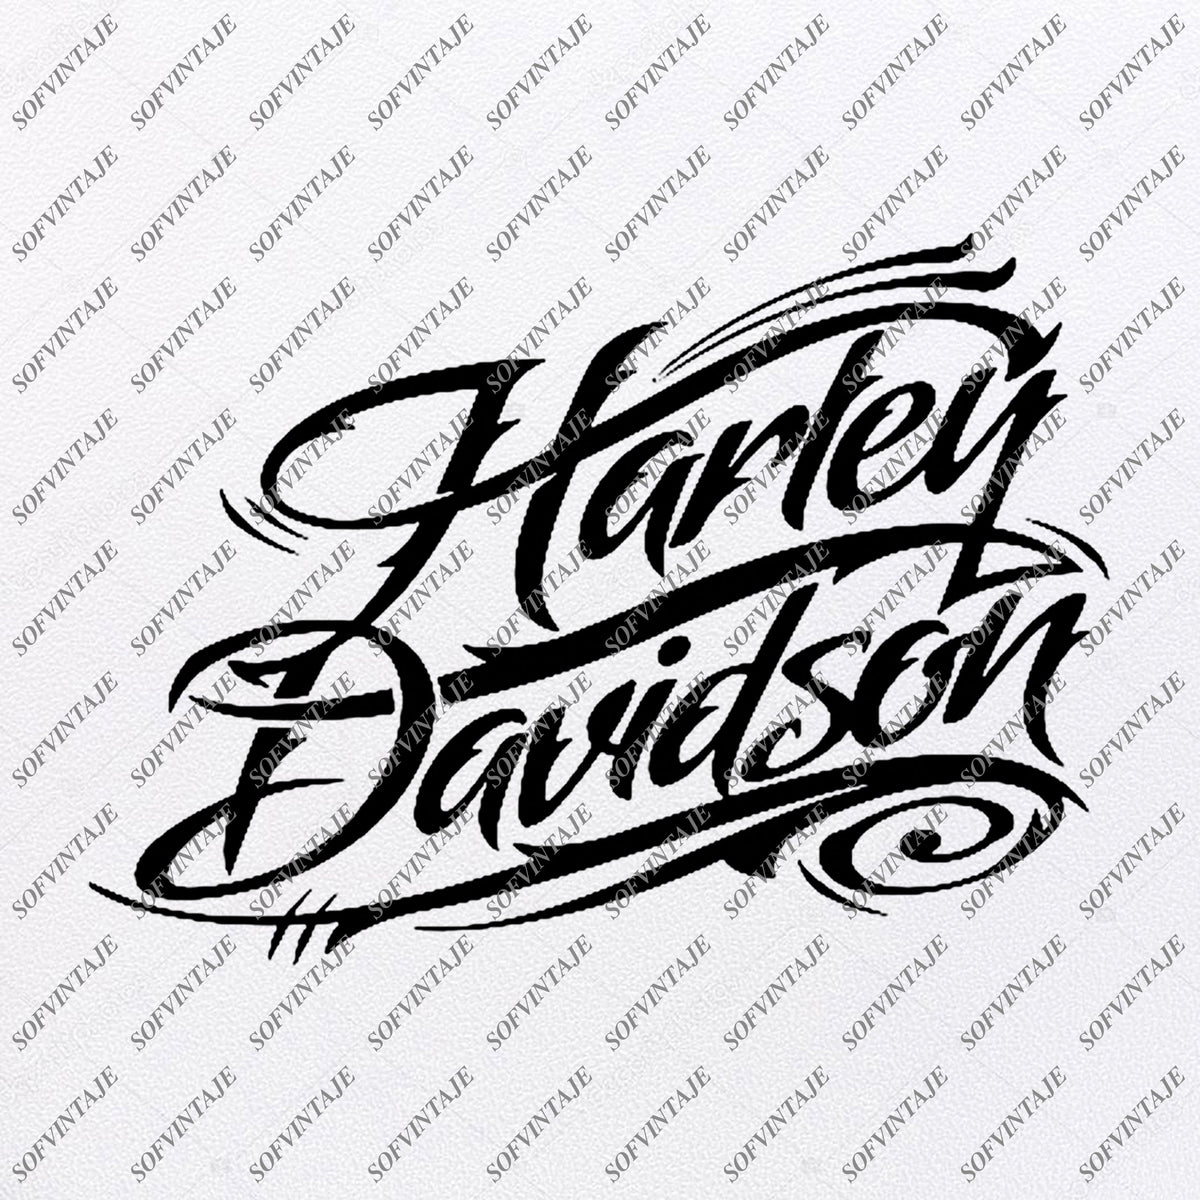 Download Harley Davidson Svg File-Harley Davidson Svg Design-Clipart-Tattoo For - SOFVINTAJE